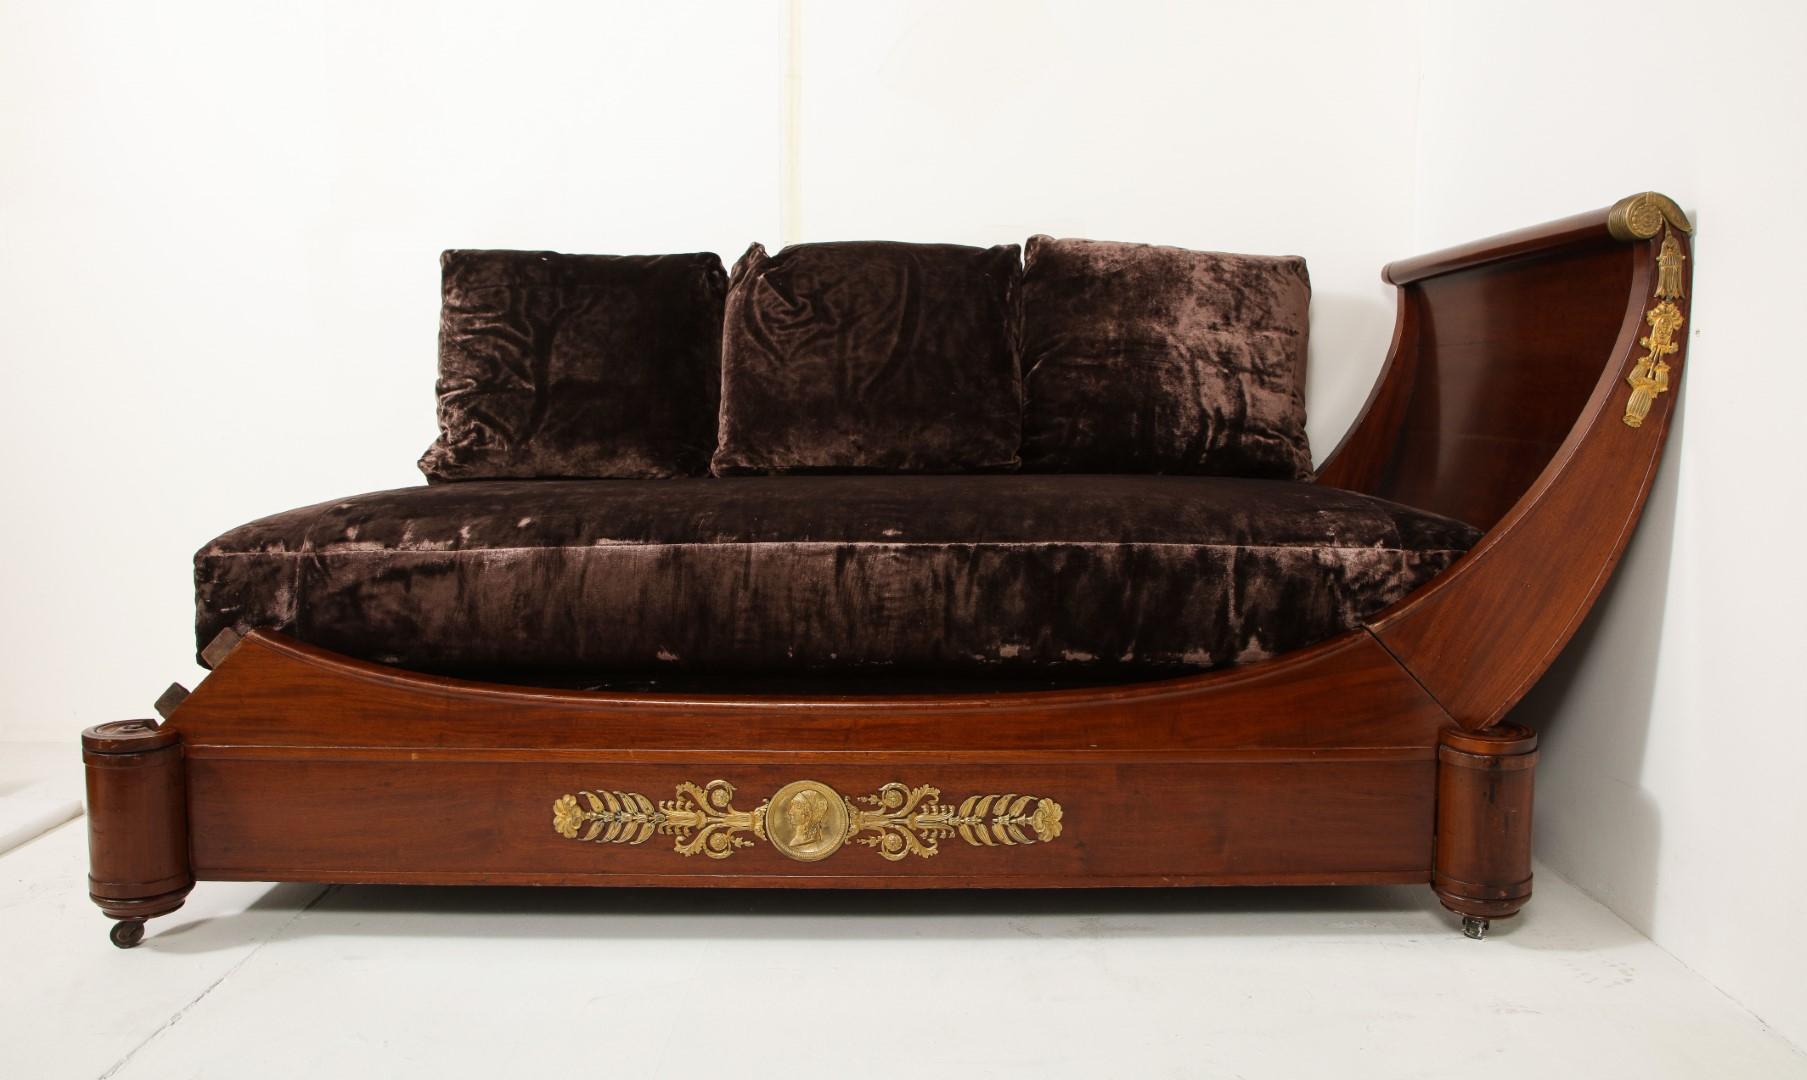 Mahagoni-Tagesbett im französischen Empire-Stil auf Rollen mit ormolierten, vergoldeten Bronzebeschlägen und schokoladenfarbener Samtpolsterung.